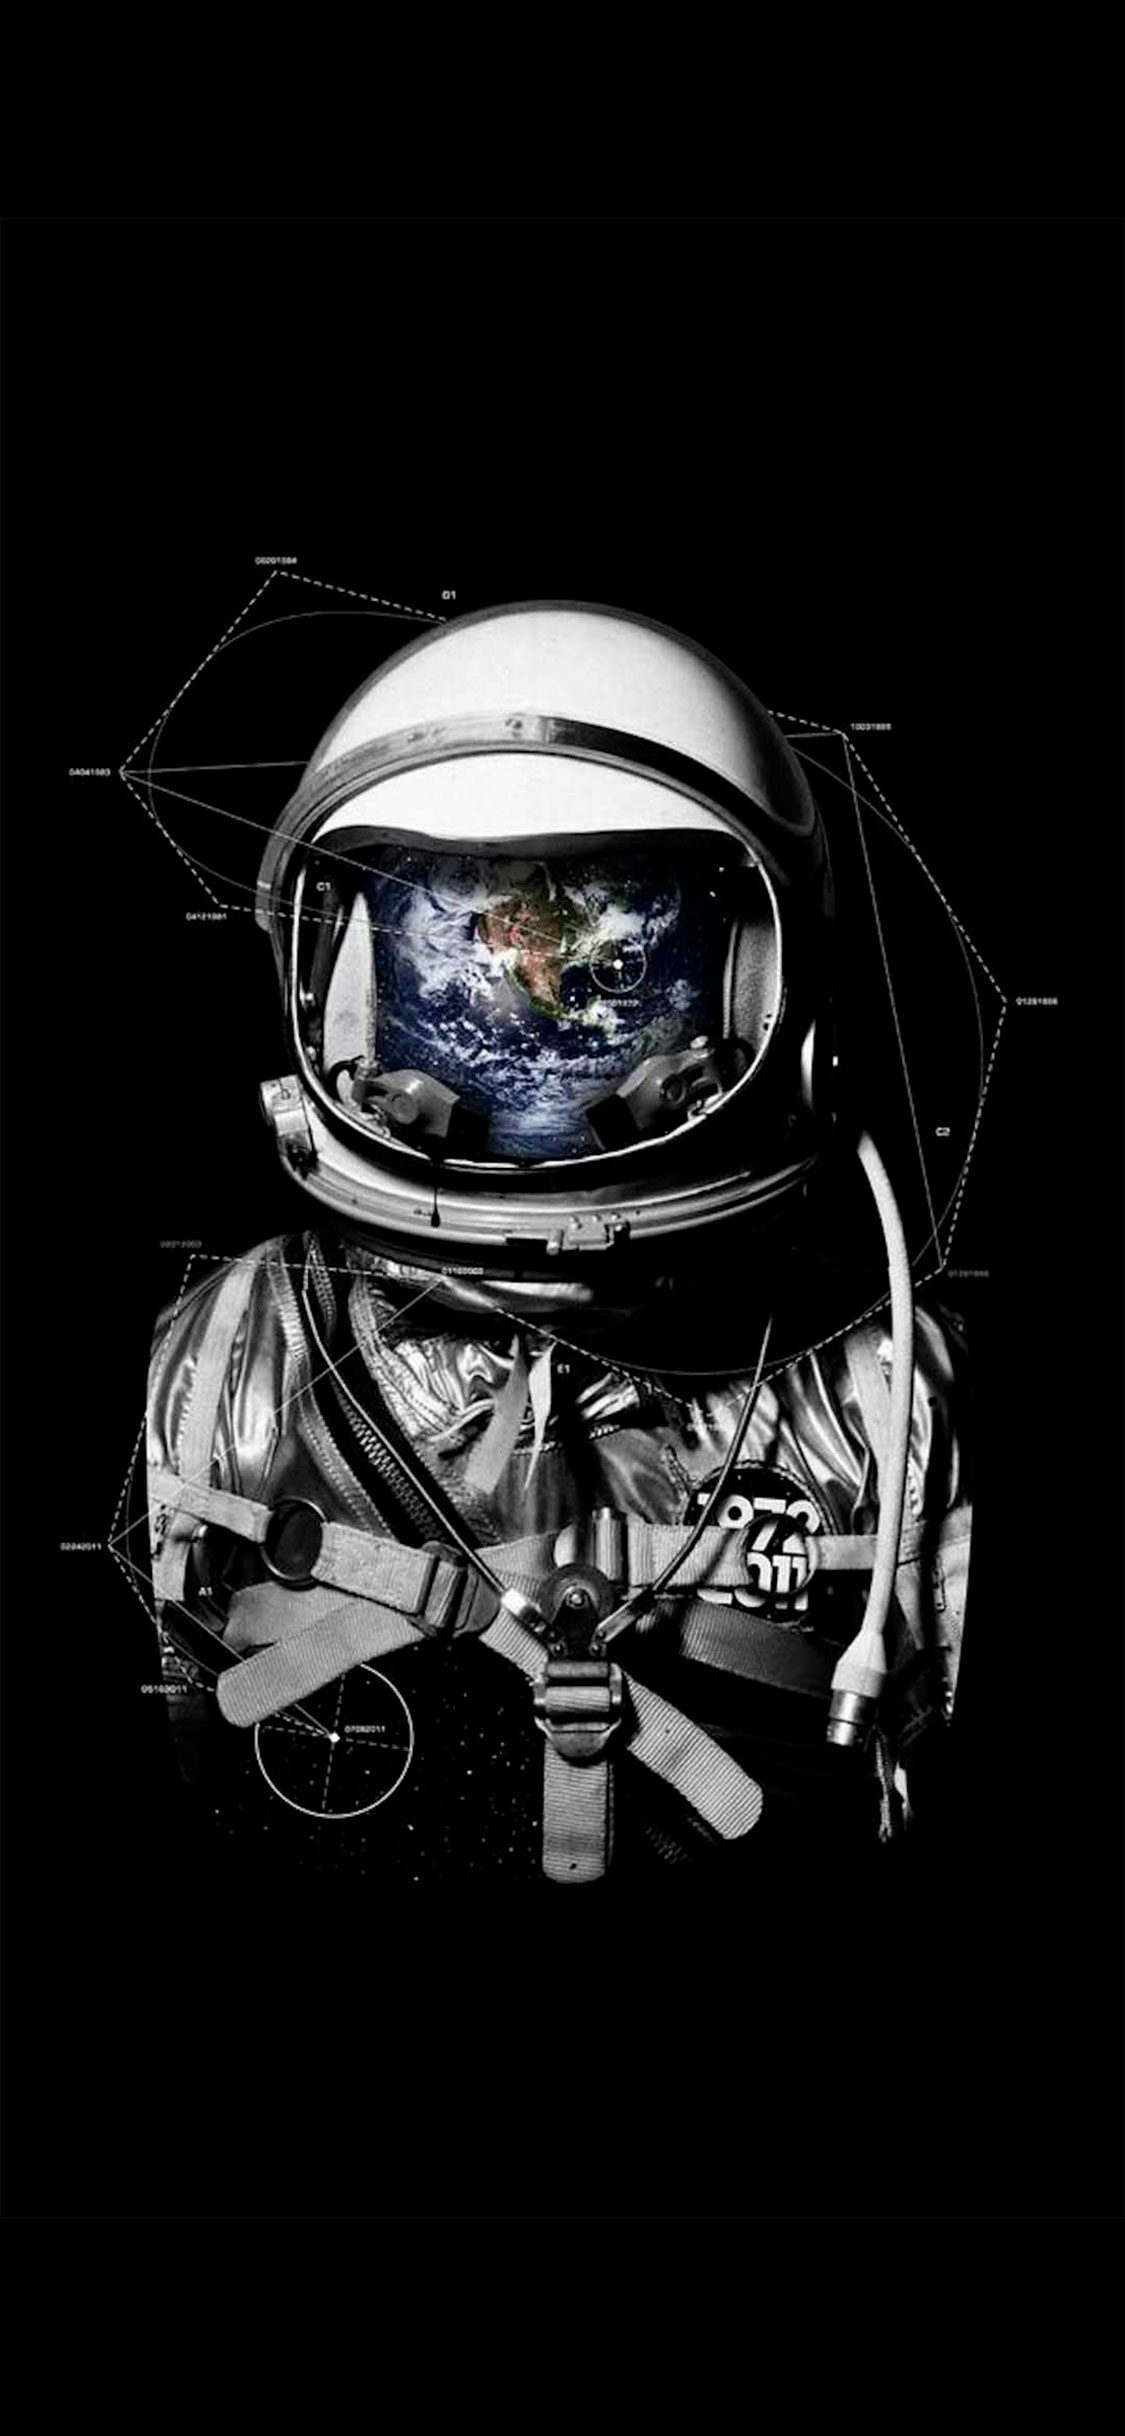 4K Wallpaper iPhone Astronaut